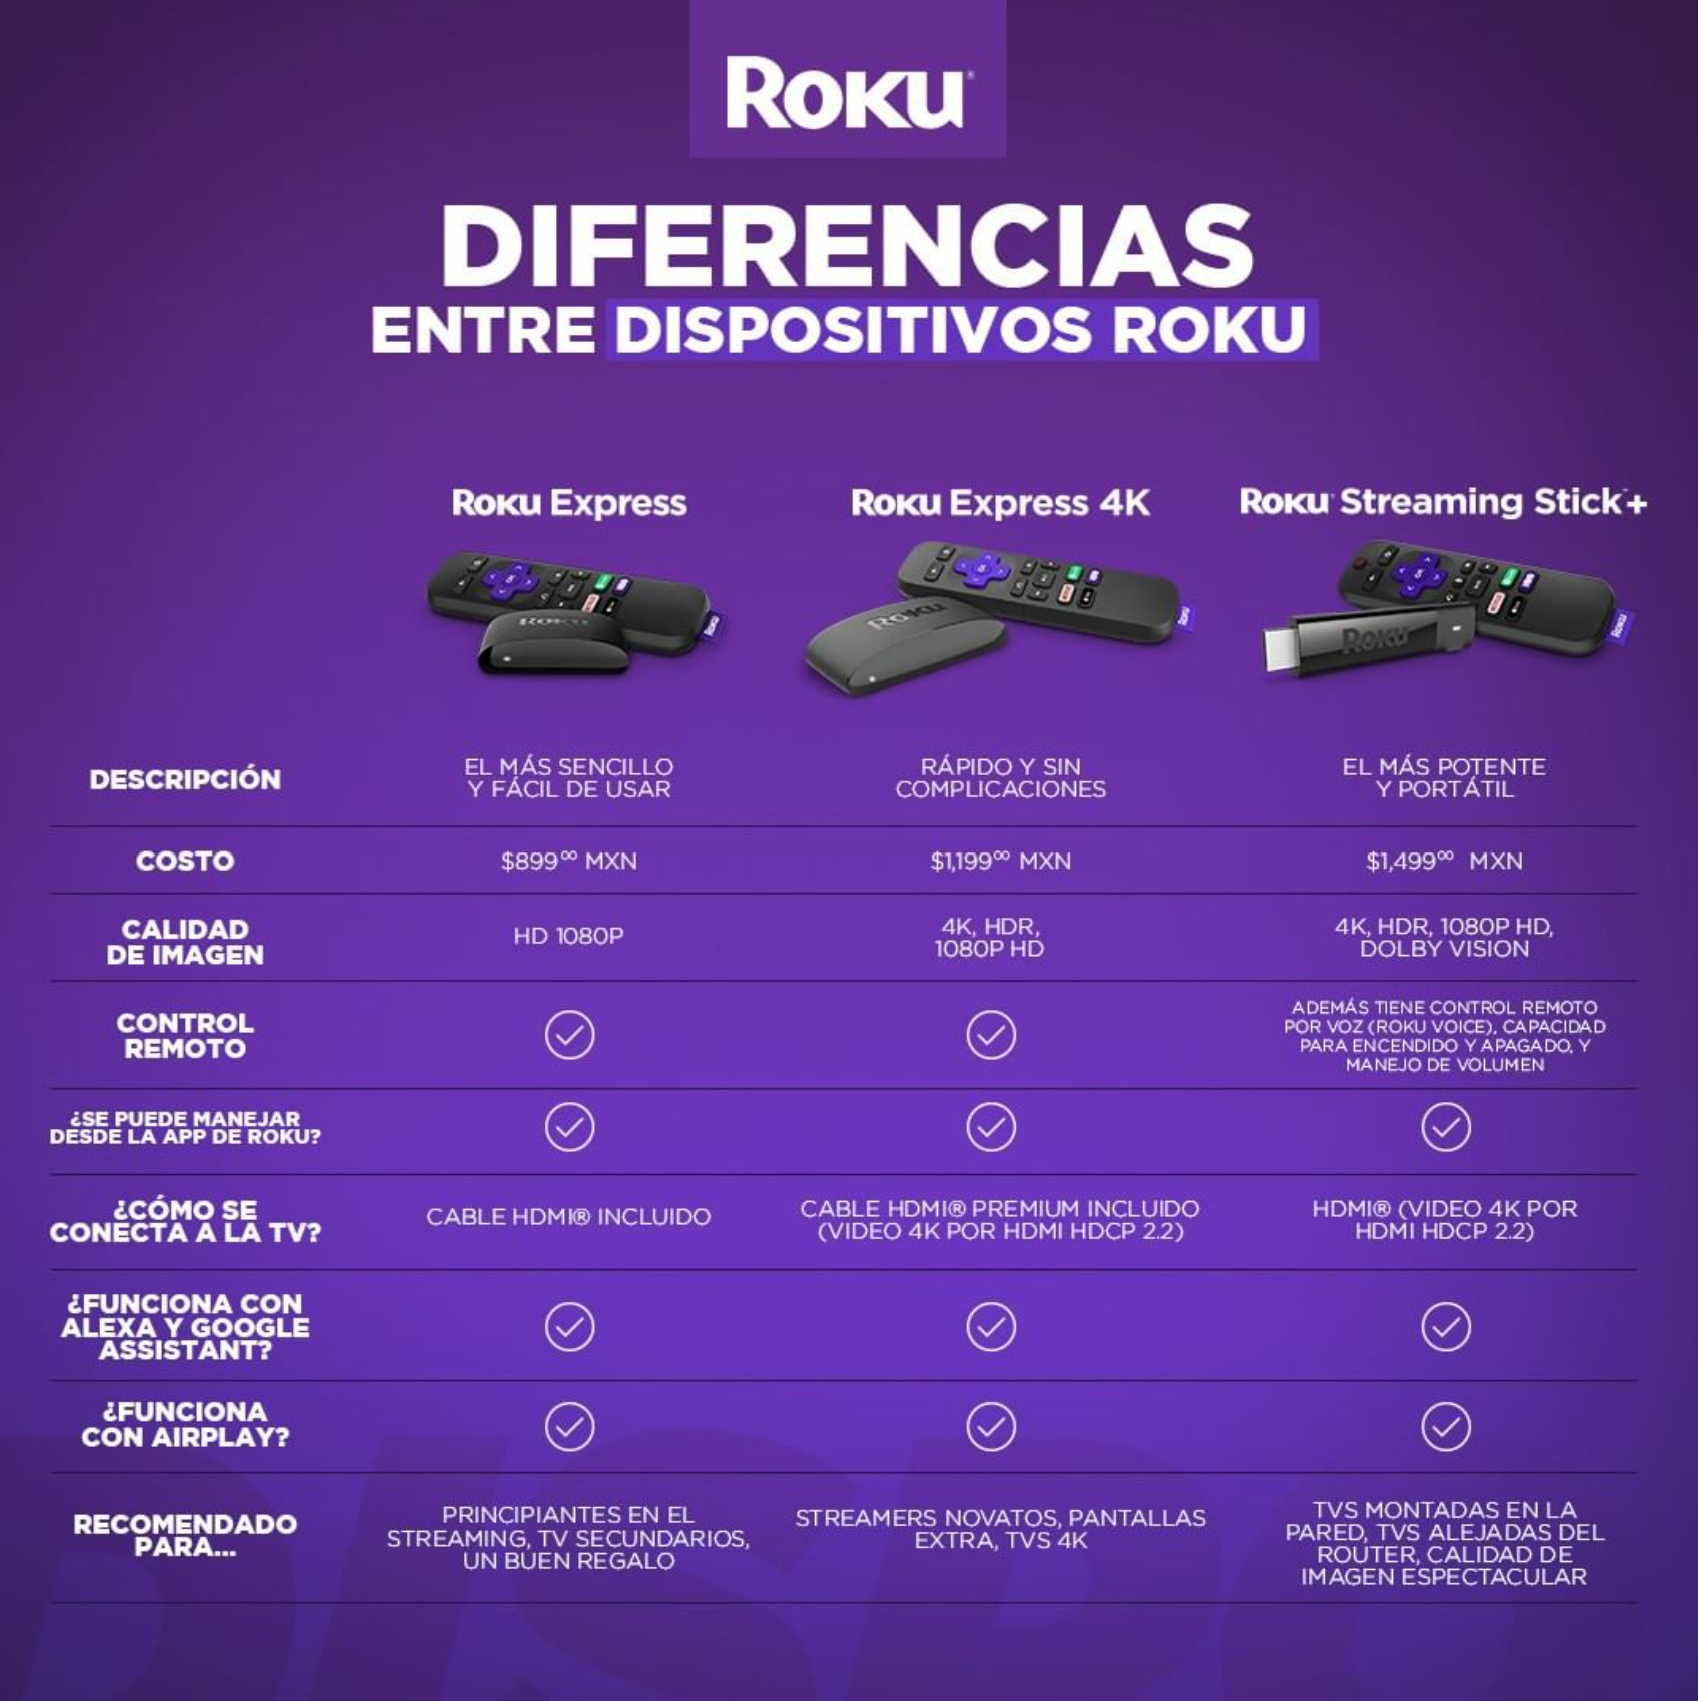 Diferencias entre Roku Streaming Stick +, Roku Express 4k y Roku